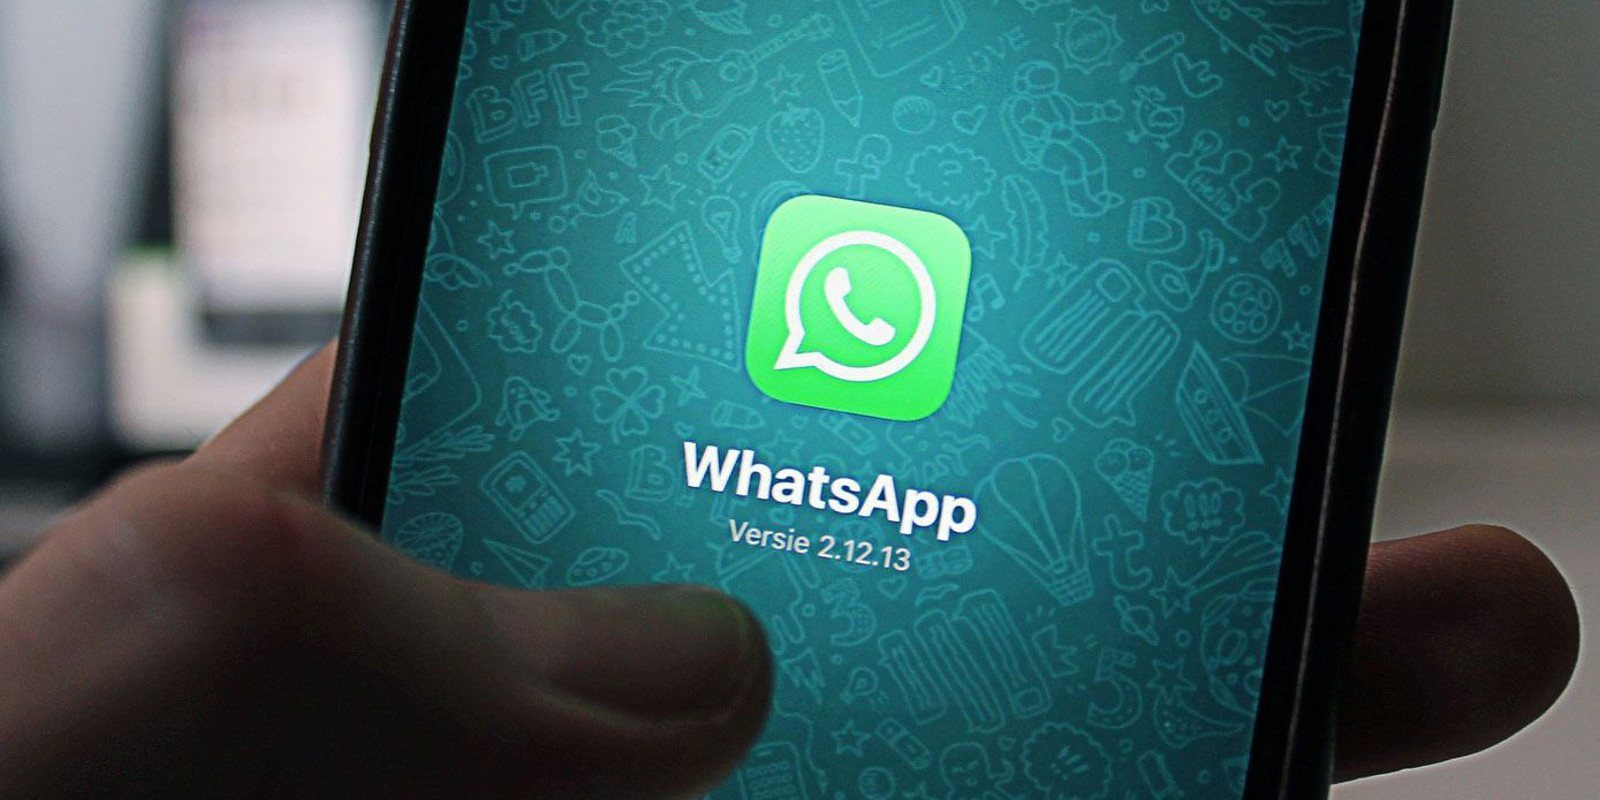 WhatsApp quiere cambiar sus condiciones: solo los mayores de 16 años podrán usarlo